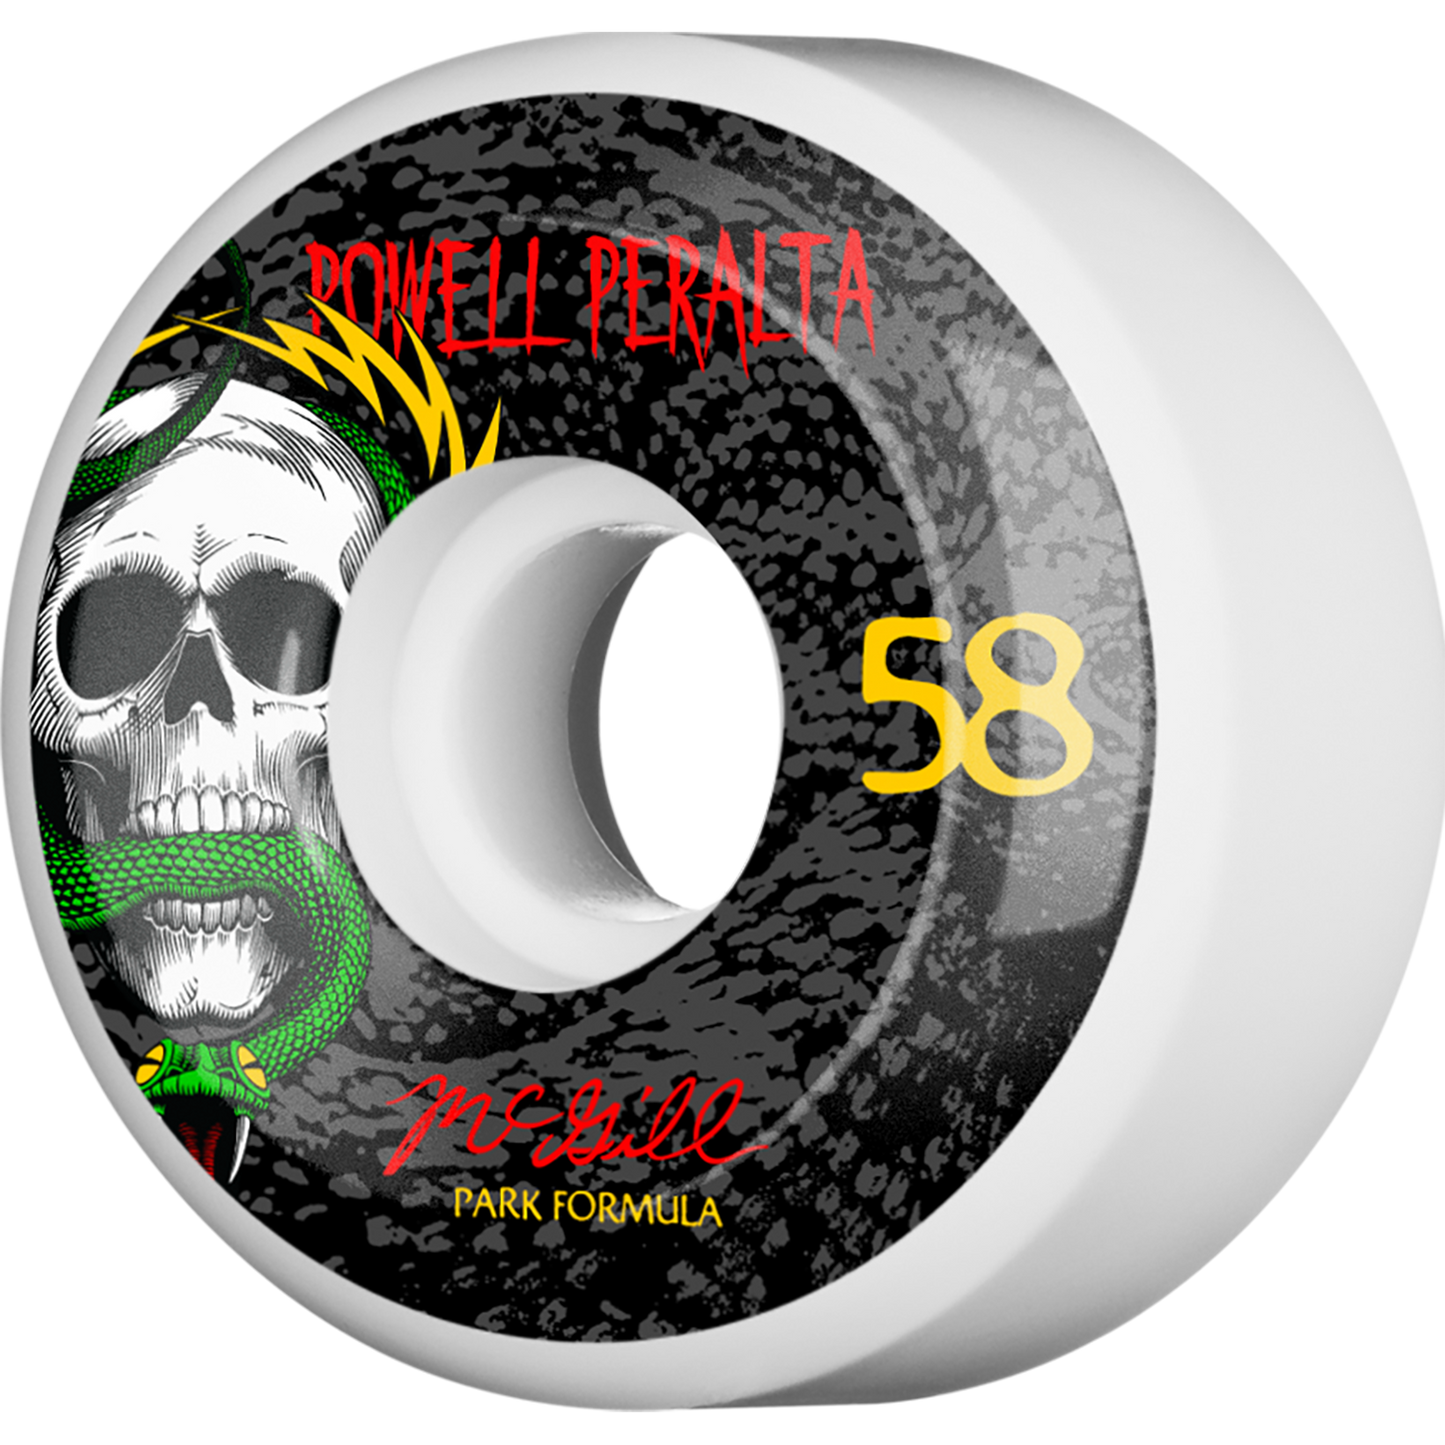 Powell Peralta Mcgill Skull & Snake 4 Pf 58mm White/Black 103a Skateboard Wheels (Set of 4)